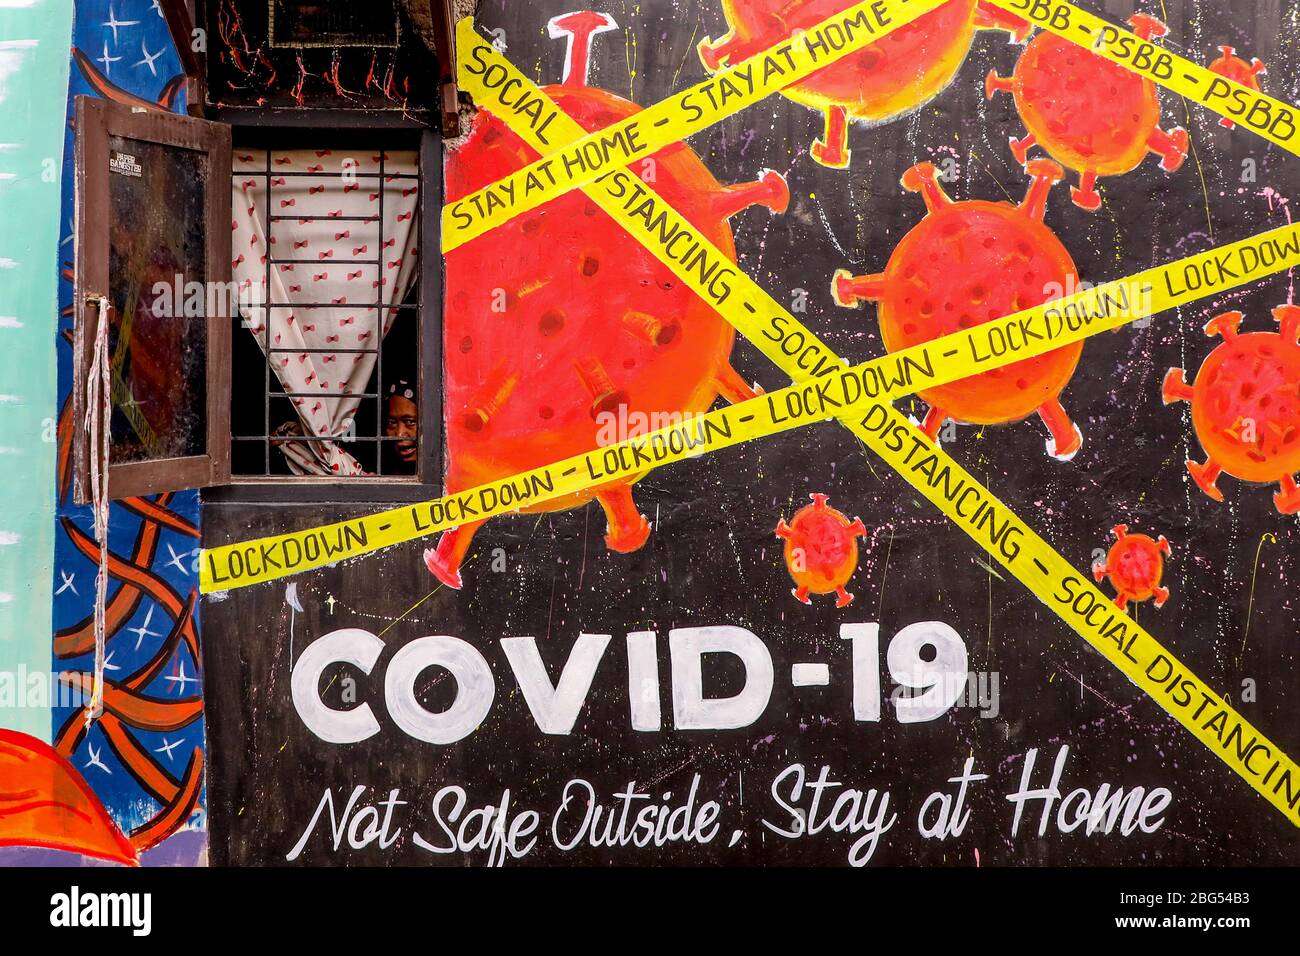 Eine Frau zieht durch ein Fenster ihres Hauses, das während einer Sperrung  mit einem Graffiti über das Coronavirus-Bewusstsein gemalt wurde.  Indonesische Künstler zeichneten Wandmalereien an den Wänden der Häuser, um  die Bevölkerung